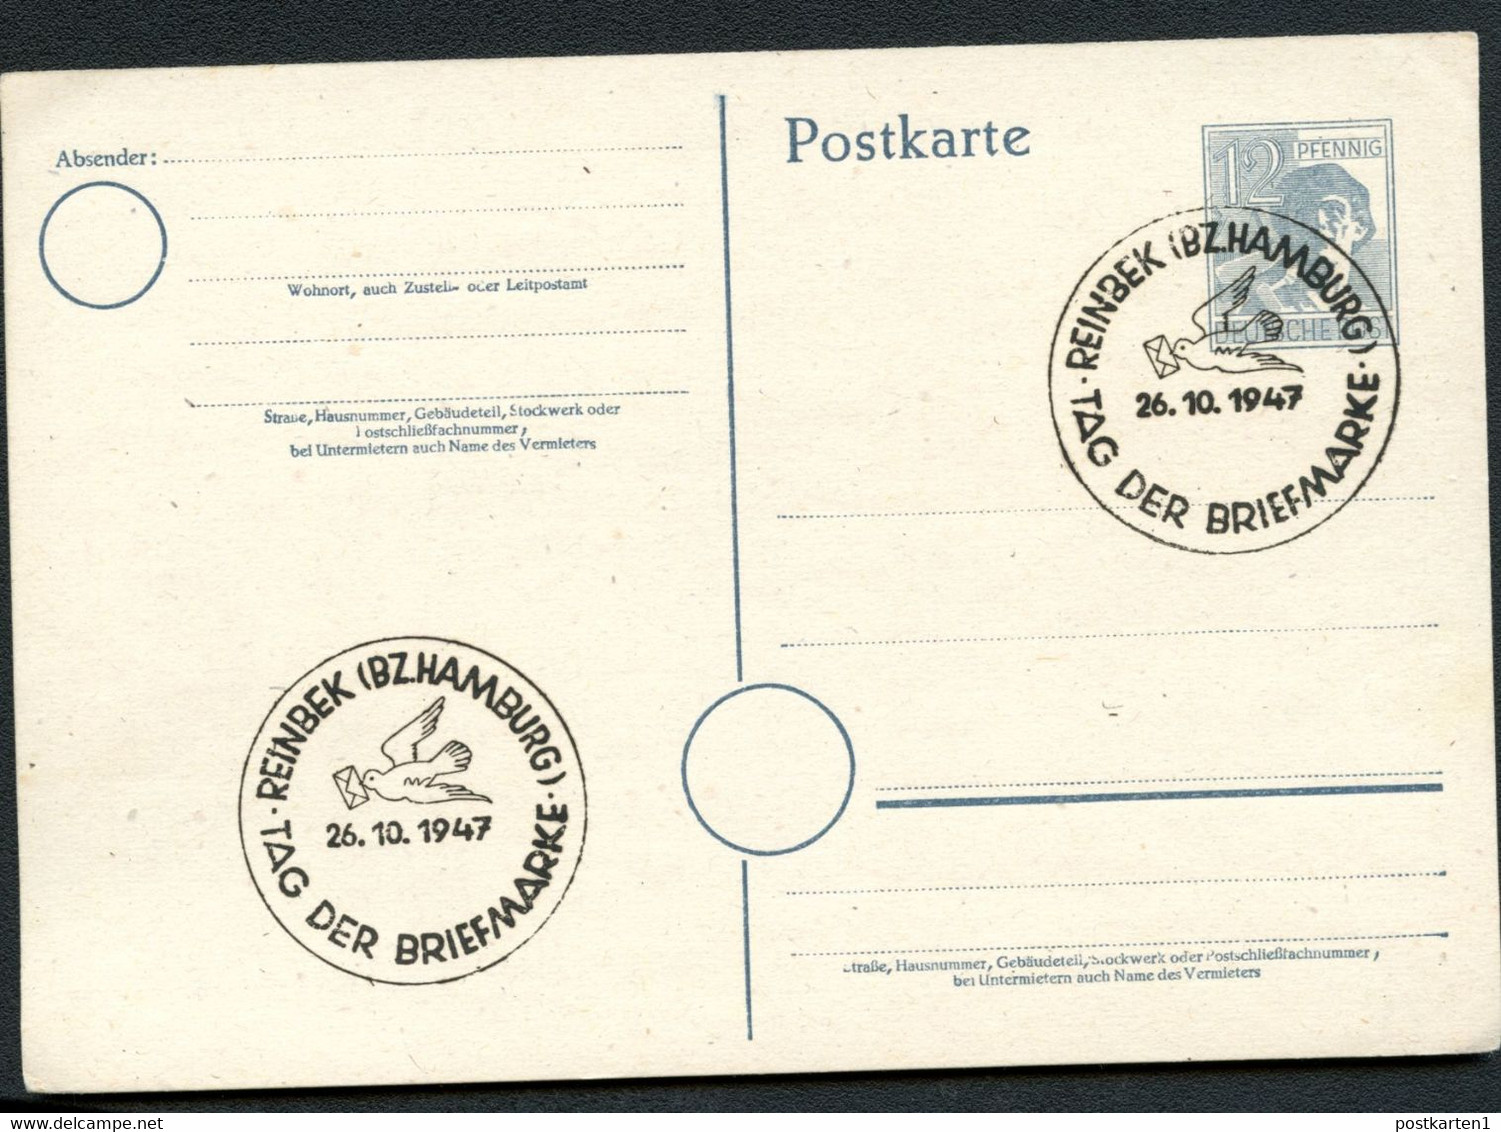 Postkarte P962 Alliierte Besetzung Sost. TAG DER BRIEFMARKE REINBEK 1947 - Postal  Stationery